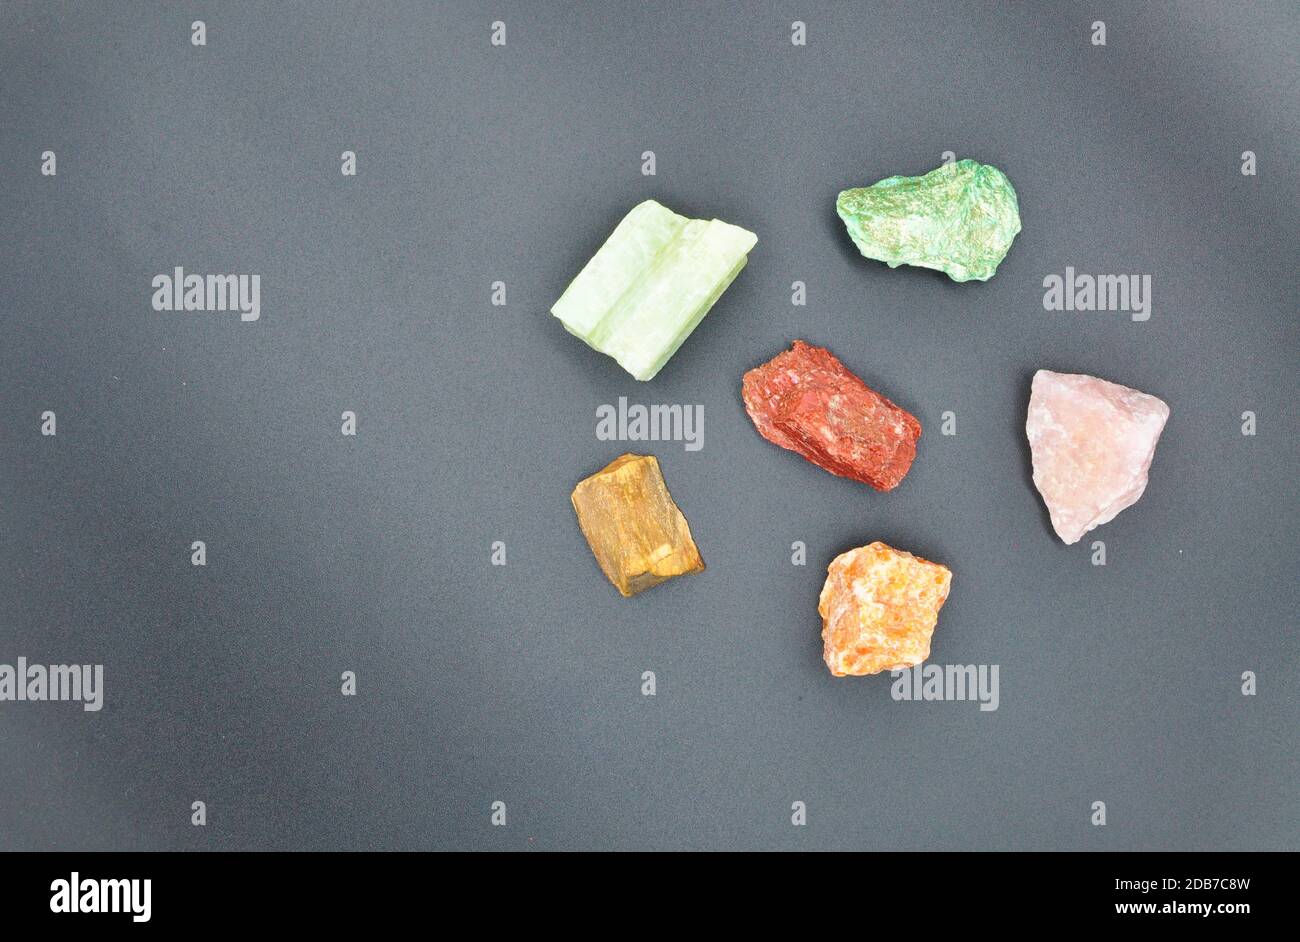 Sammlung von wertvollen Mineralien und farbigen Edelsteinen isoliert auf schwarz Hintergrund Stockfoto